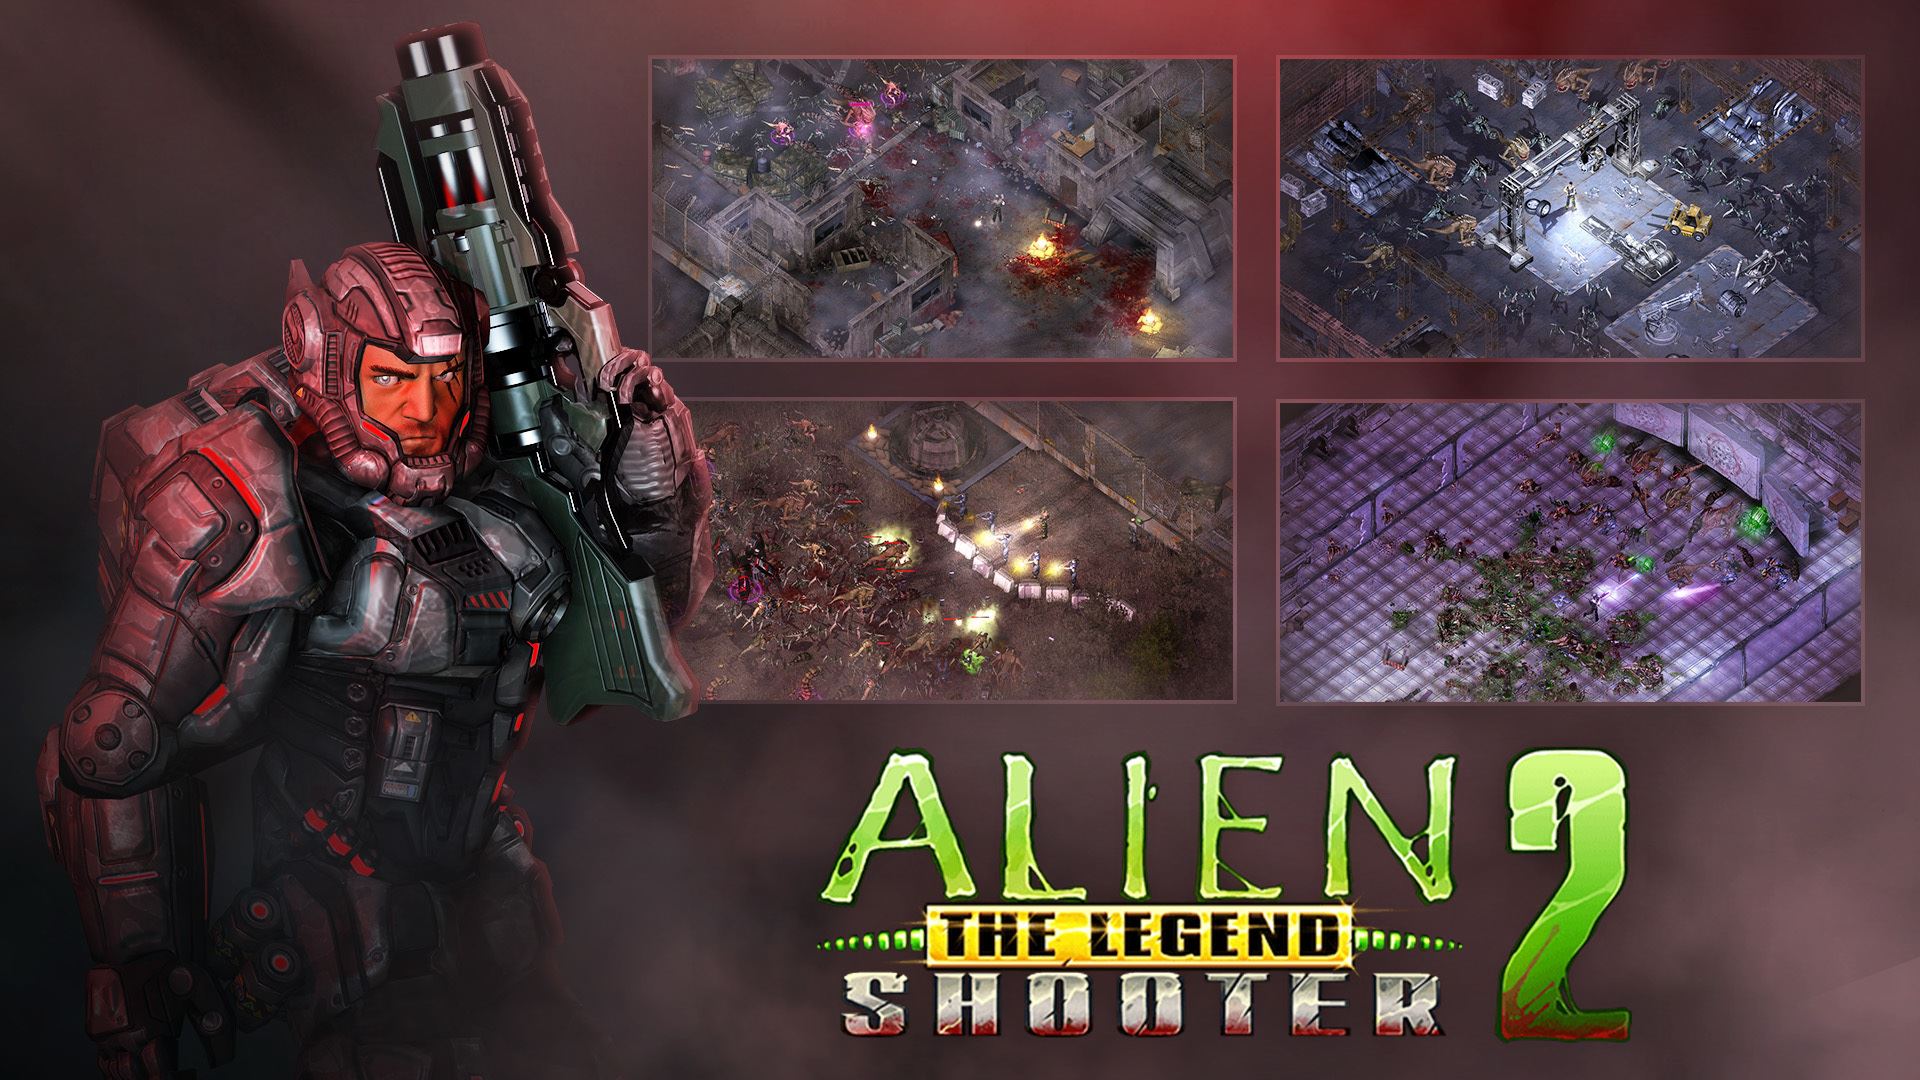 [REVIEW GAME] Alien Shooter 2 - The Legend v1.3.2 - Huyền thoại một thời đã trở lại với một diện mạo mới.